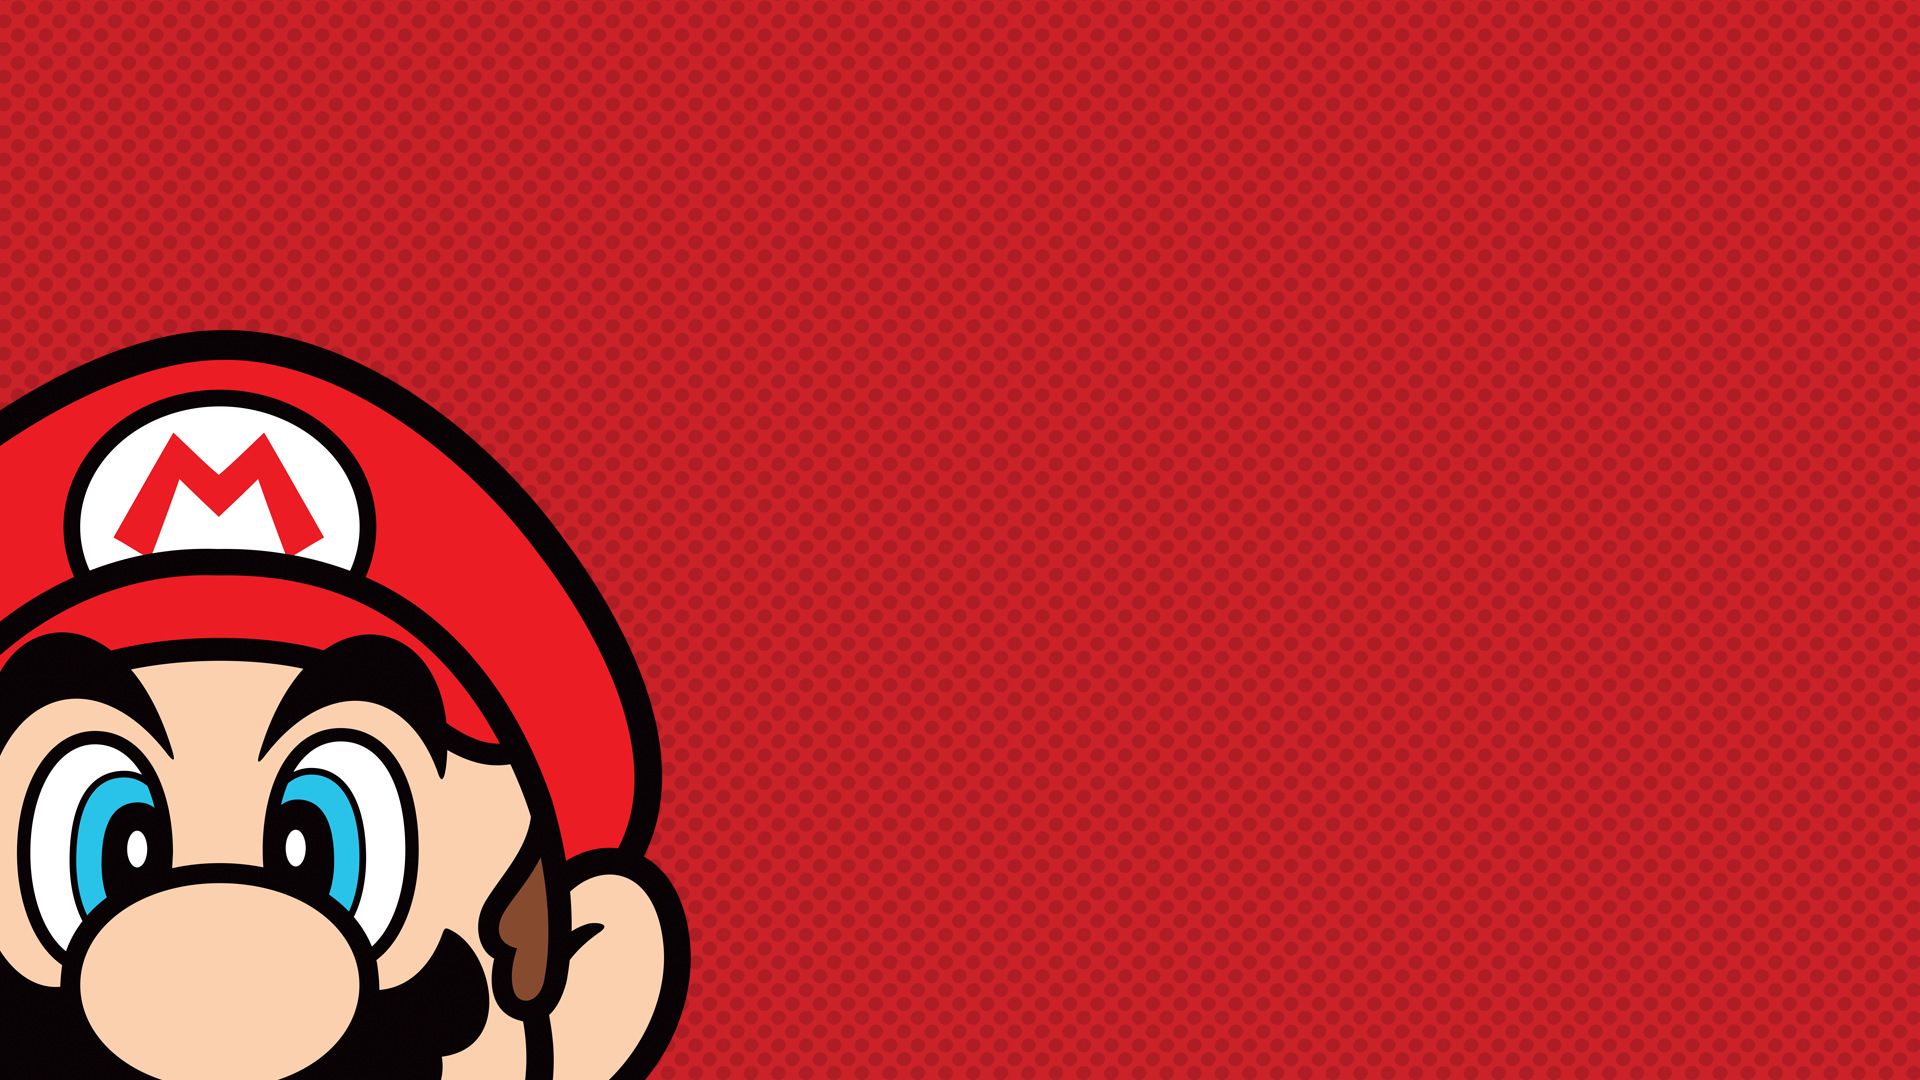 Club Nintendo Nintendo Nintendo 3DS Nintendo Switch Video Games Super Mario Wallpaper:1920x1080